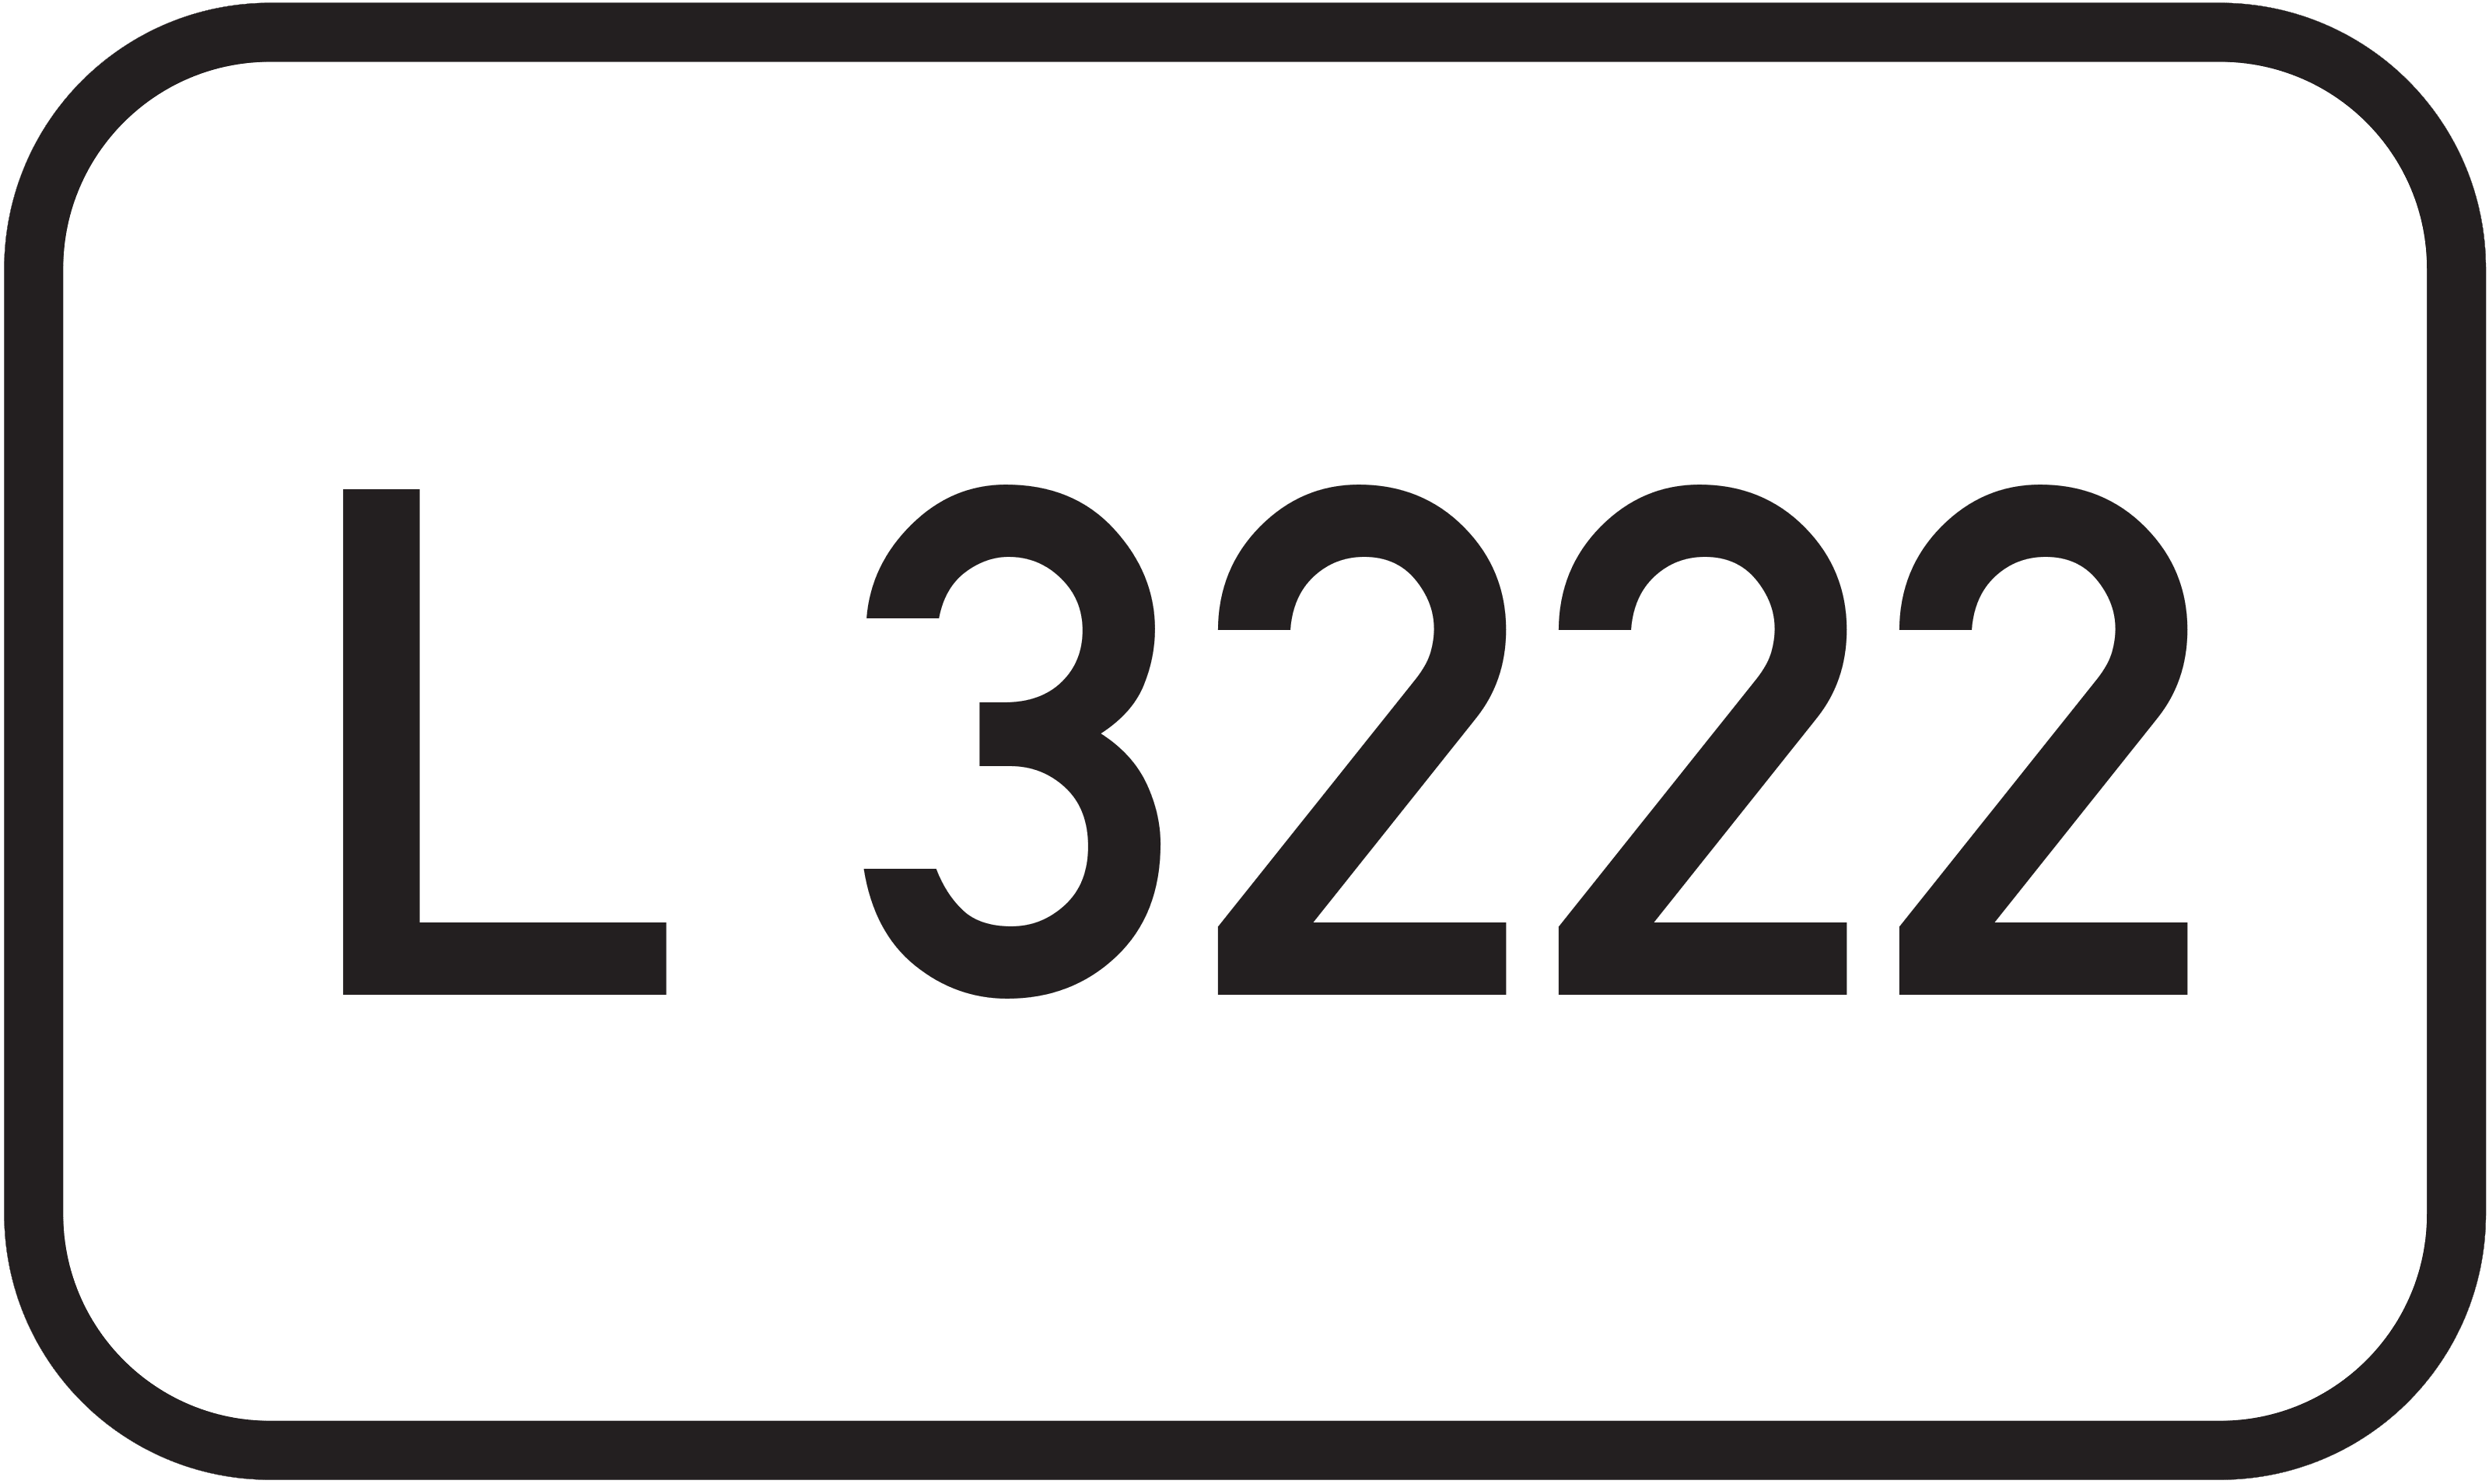 Landesstraße L 3222